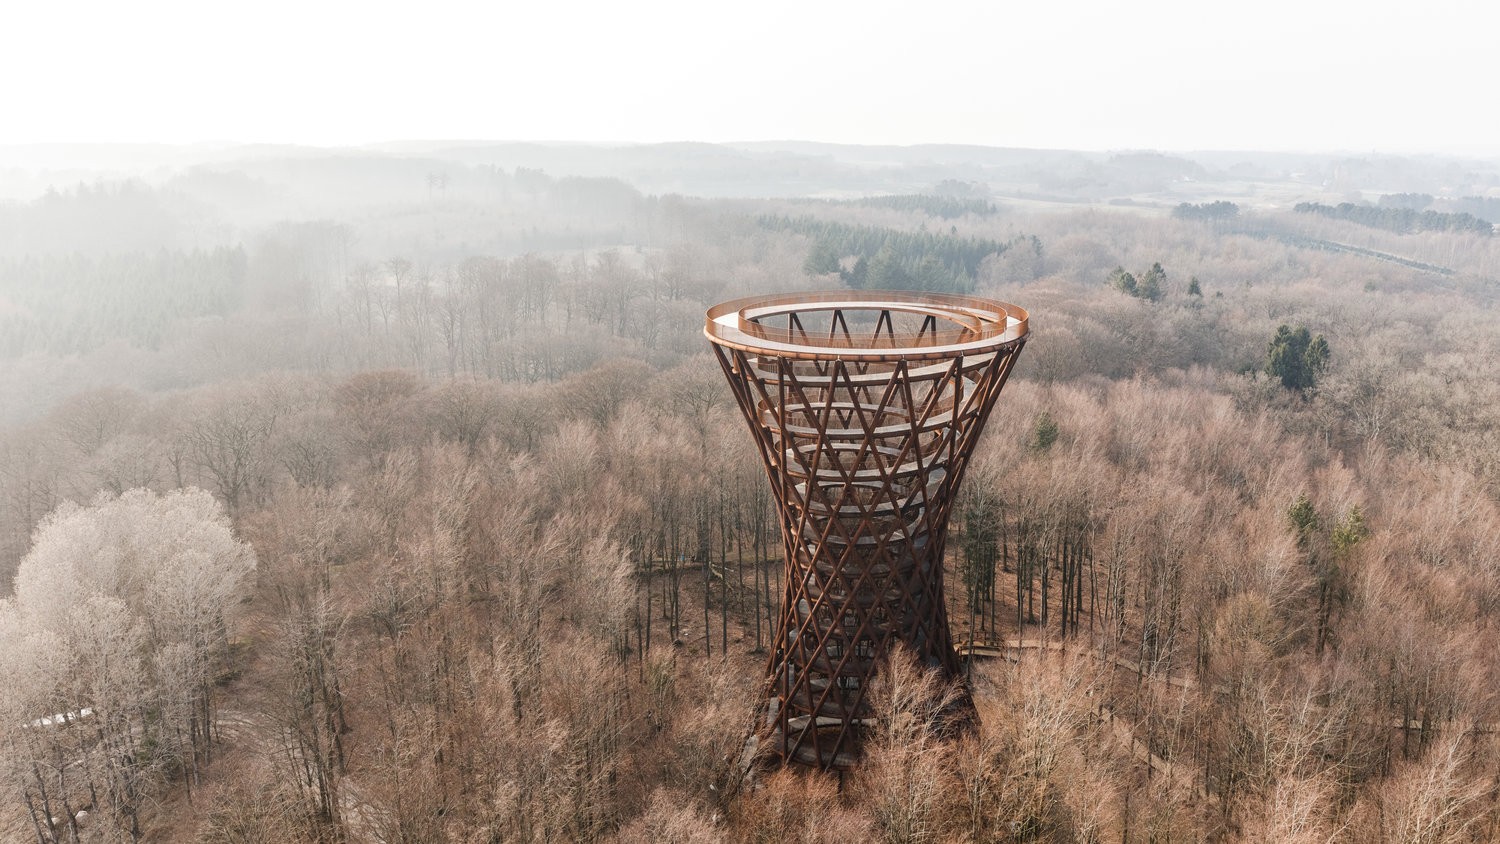 Subindo ou descendo é possível contemplar paisagens de rara beleza natural ao longo de 45 metros de altura (Foto: RasmushHjortshoj_Effekt7 / Divulgação)